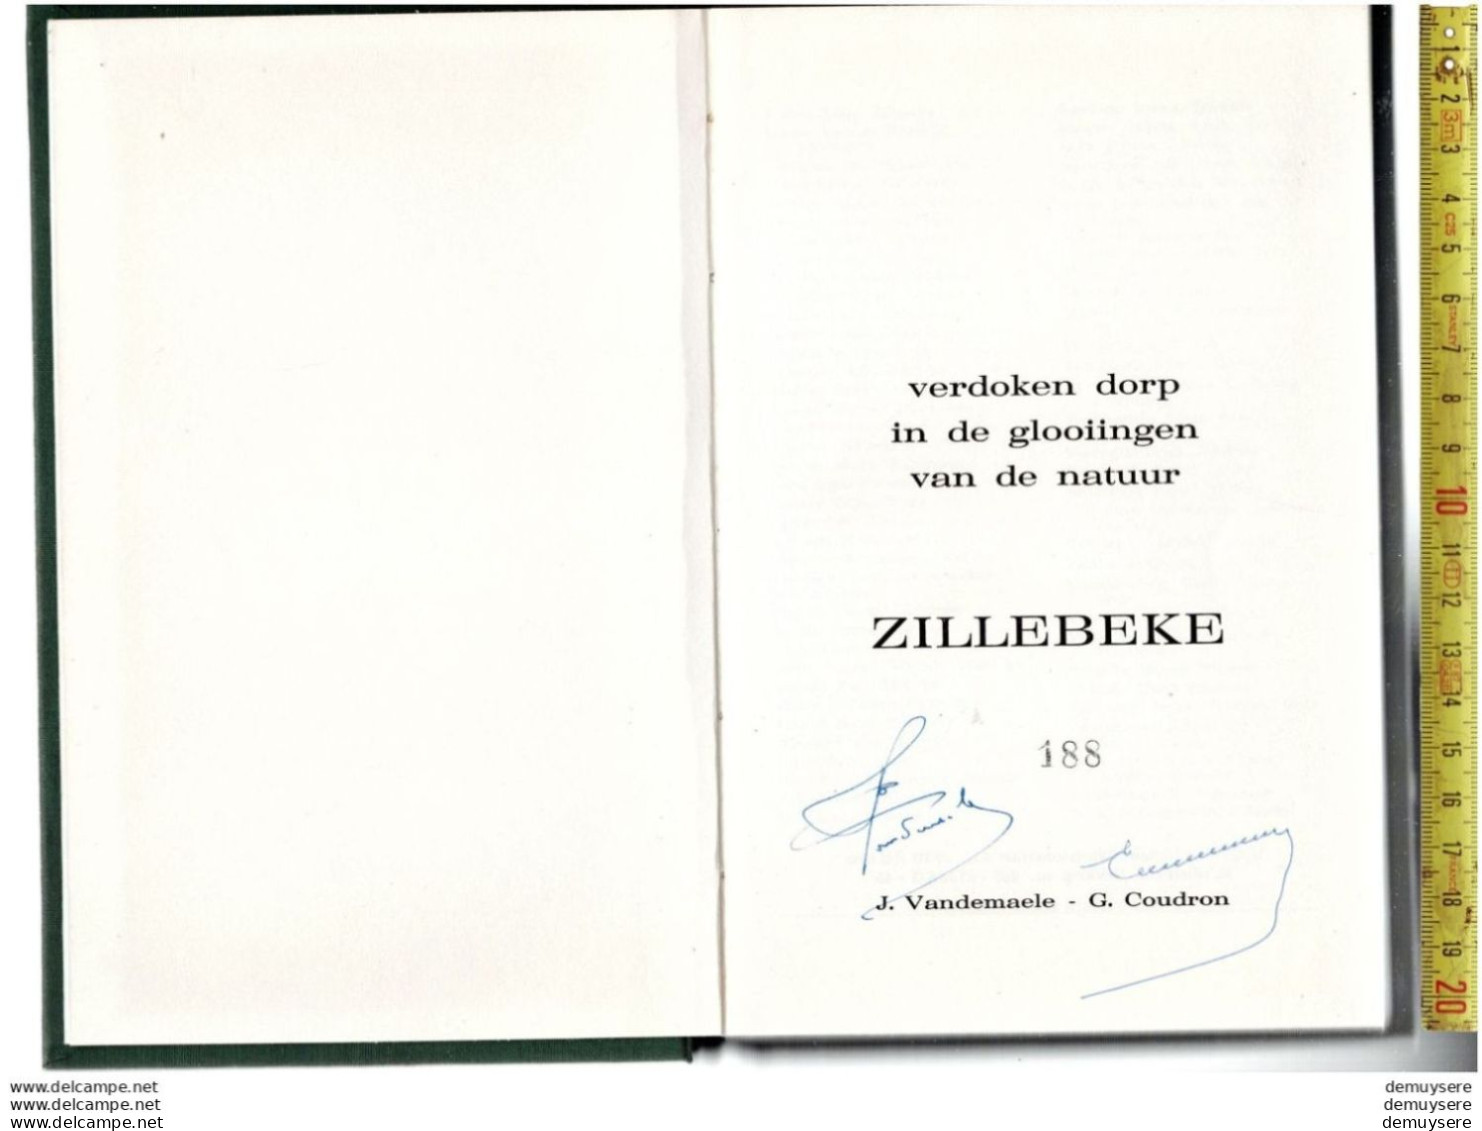 BOEK VERDOKEN DORP IN DE GLOOIINGEN VAN DE NATUUR ZILLEBEKE -  188 - 1974 - 198 BLZ. GETELEND - Geschiedenis